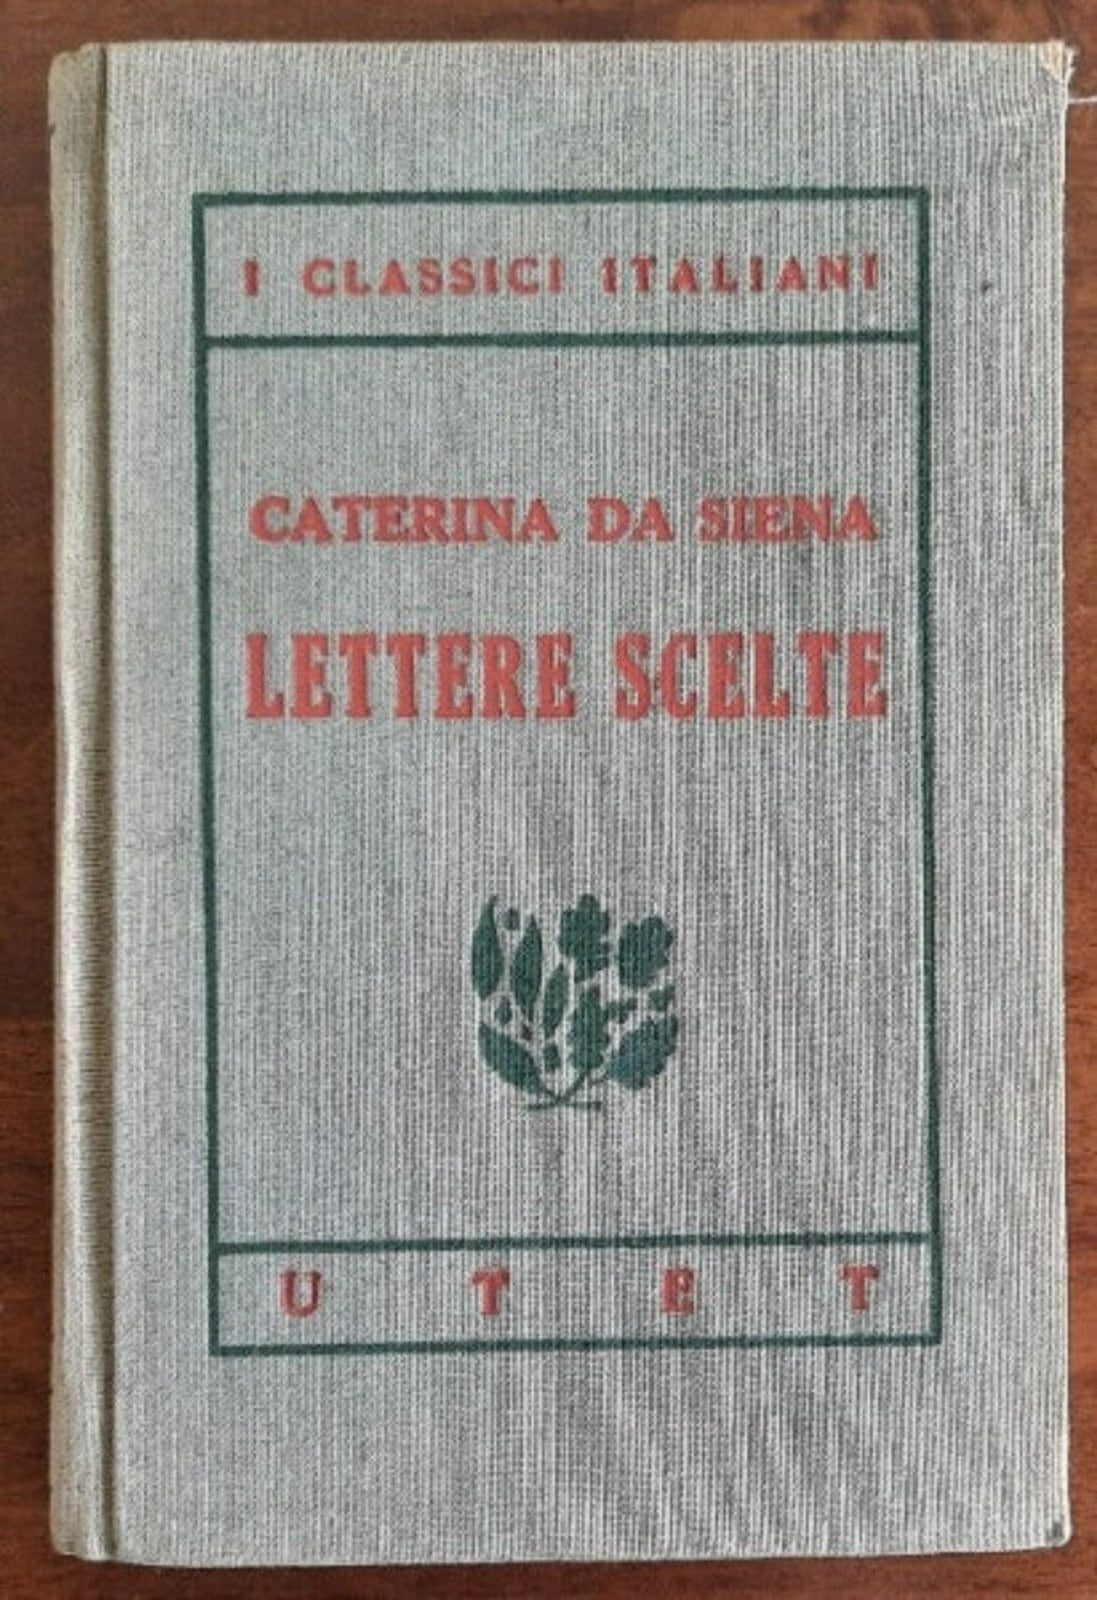 Lettere scelte - Caterina Da Siena